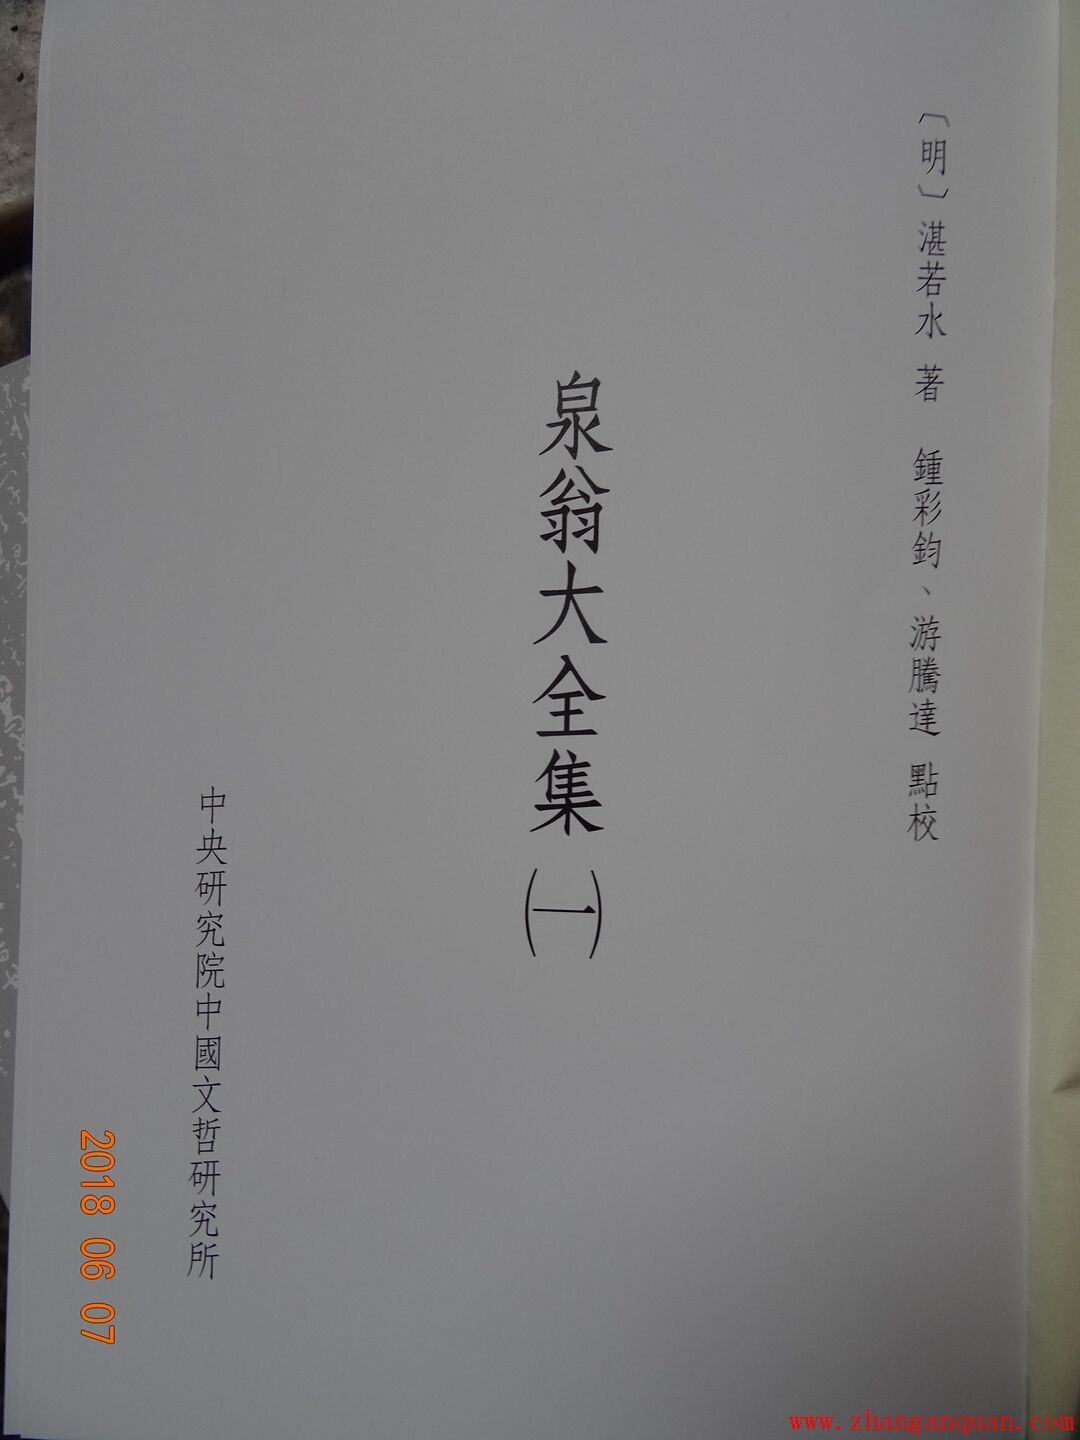 多谢台湾游腾达、钟彩钧老师从台湾邮寄《泉翁大全集》一套4本、《甘泉先生续编大全》一套2本过来给湛氏宗亲。